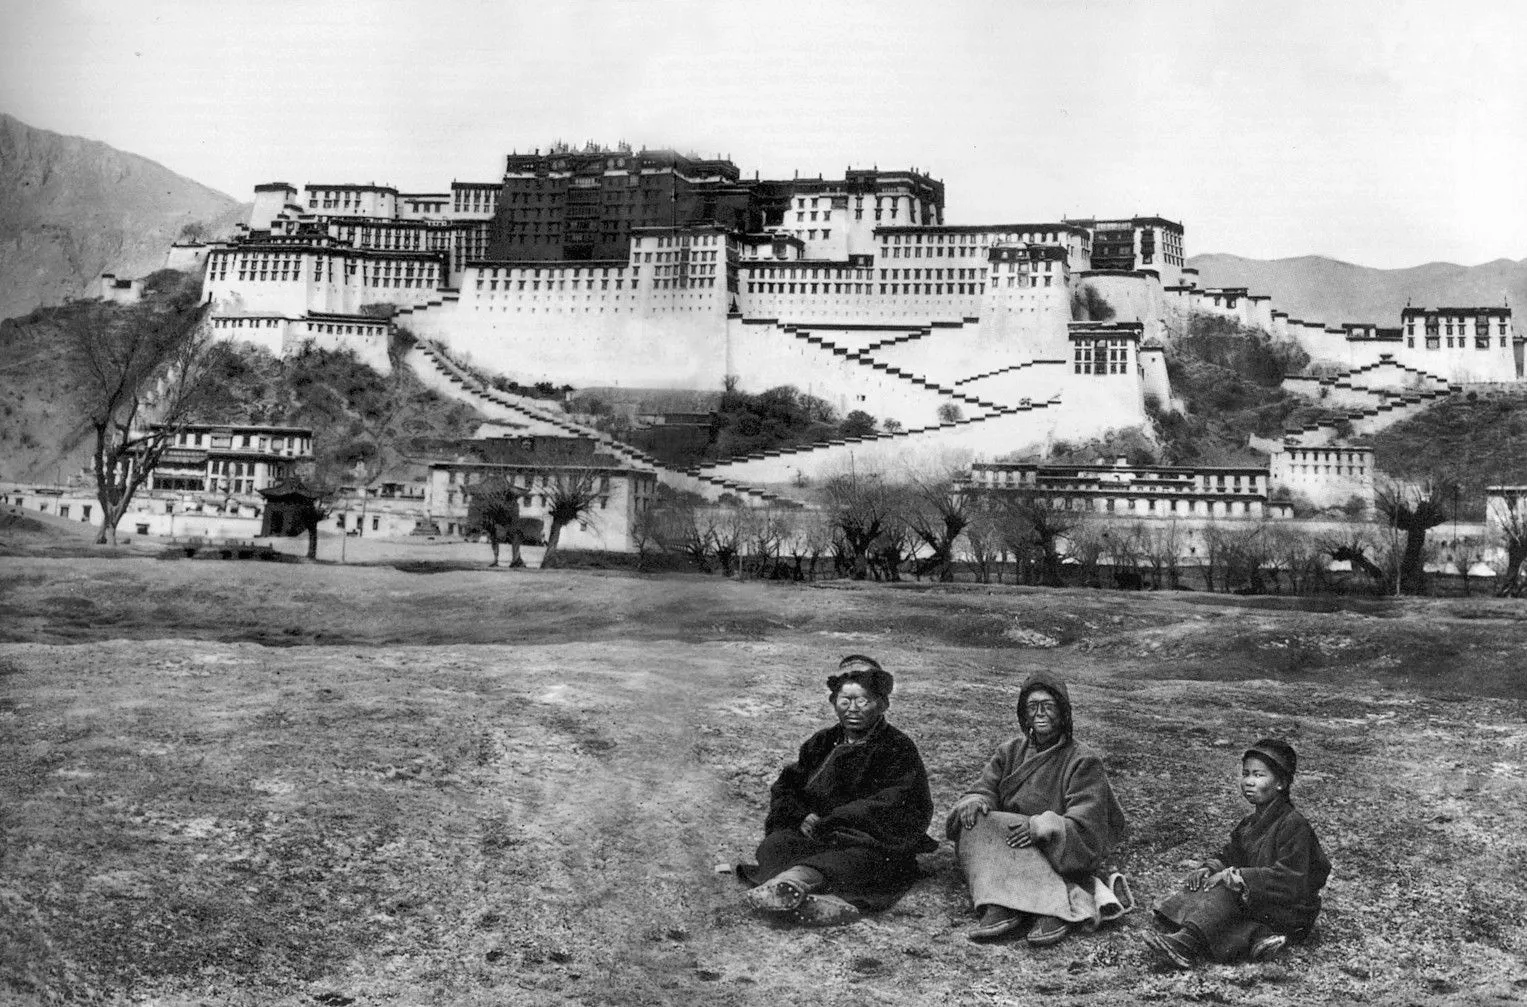 Alexandra David-Néel, amb la cara pintada amb tinta per passar desapercebuda, i el seu guia van ser fotografiats davant del palau de Lhasa el 1924